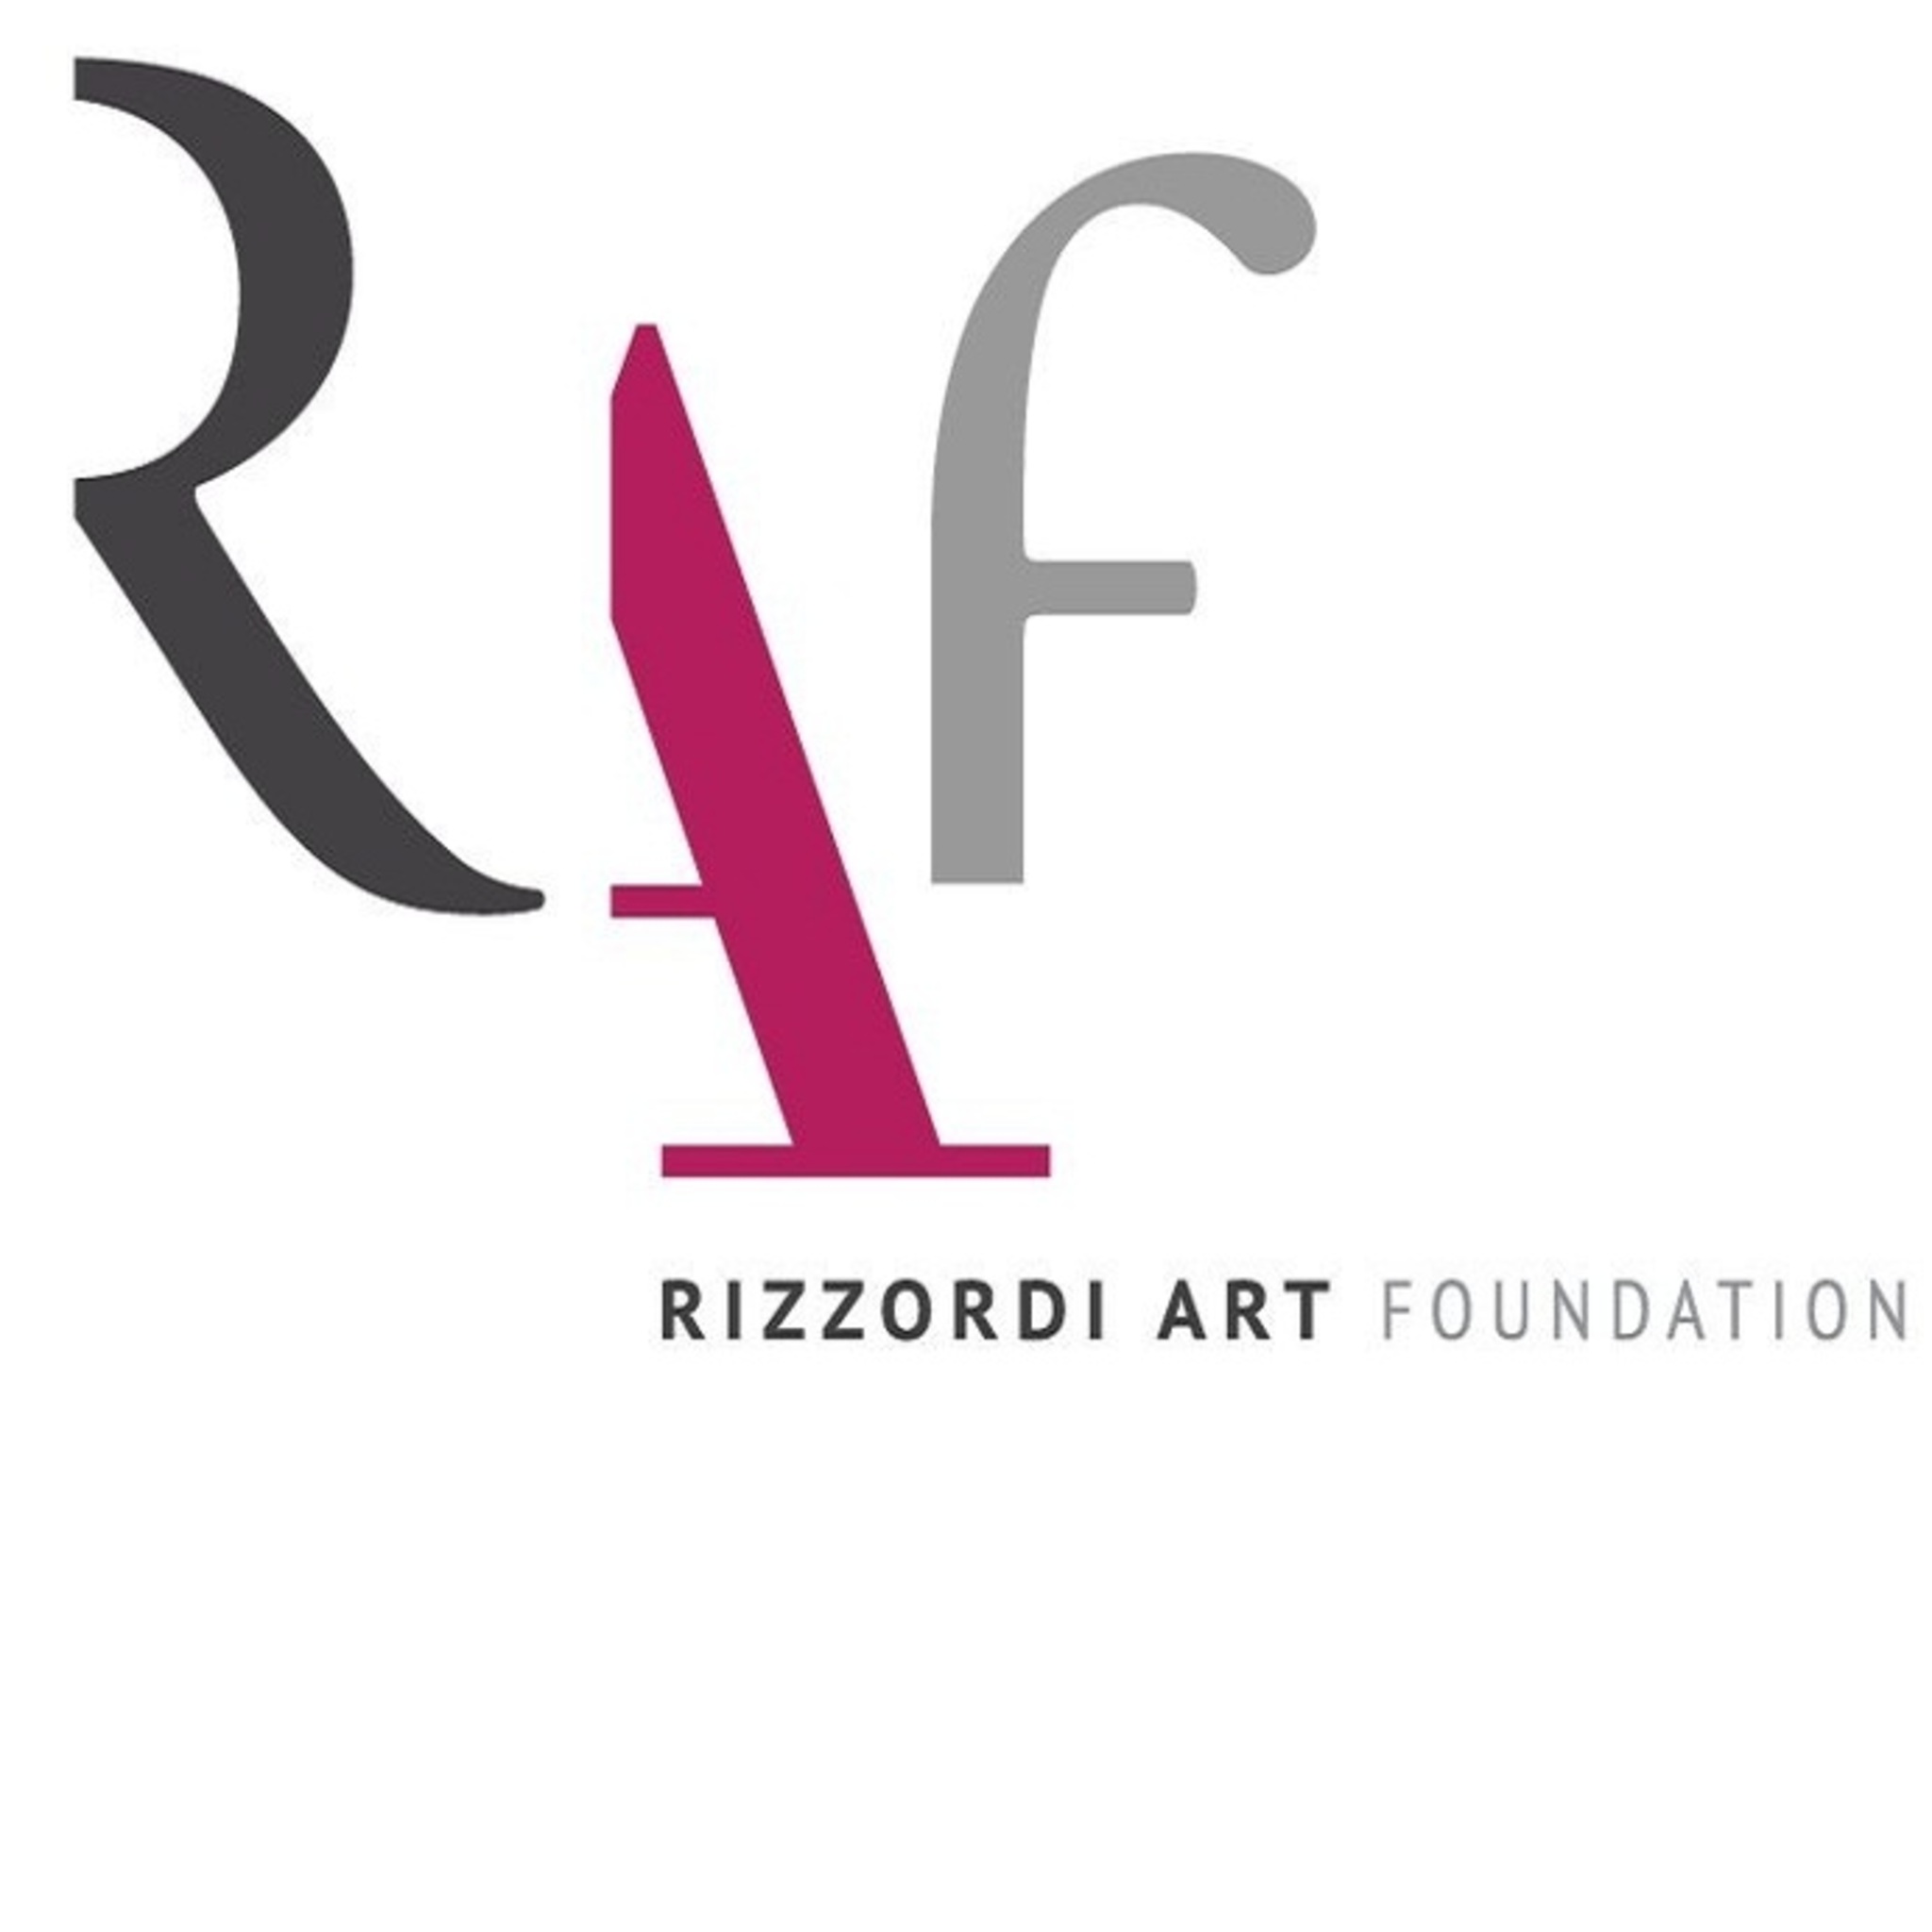 Rizzordi Art Foundation